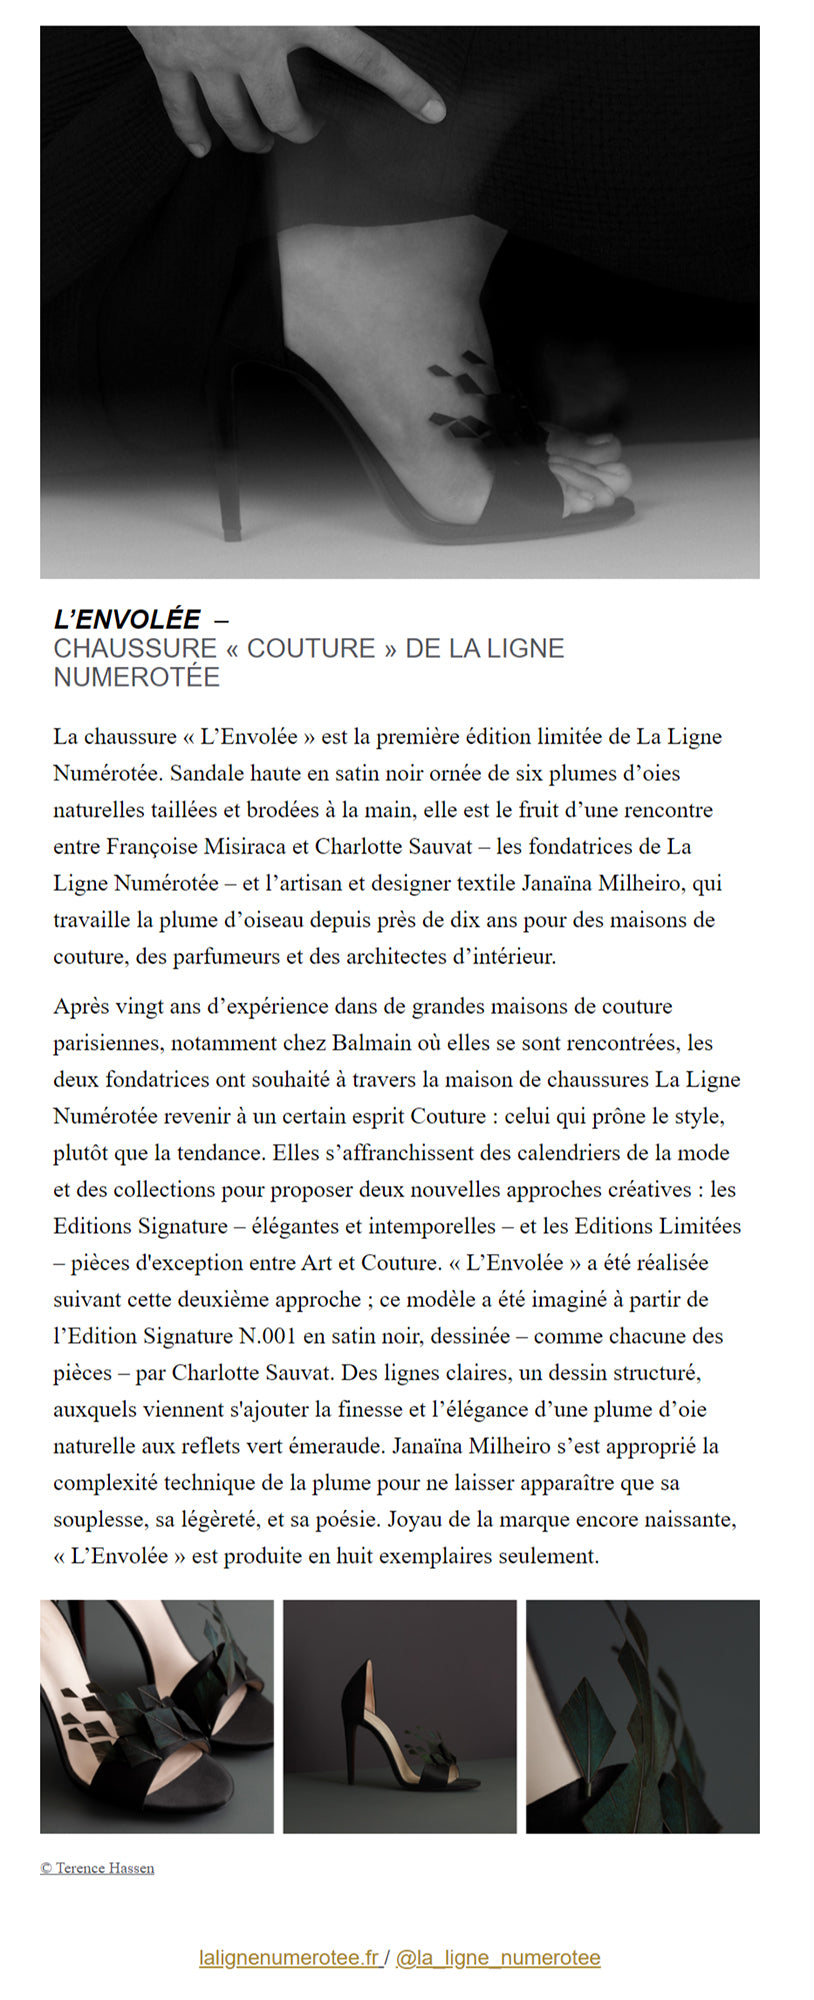 Newsletter Process Magazine par le journaliste Benoit Pelletier au sujet de l'Edition Limitée "L'Envolée" de La Ligne Numérotée.